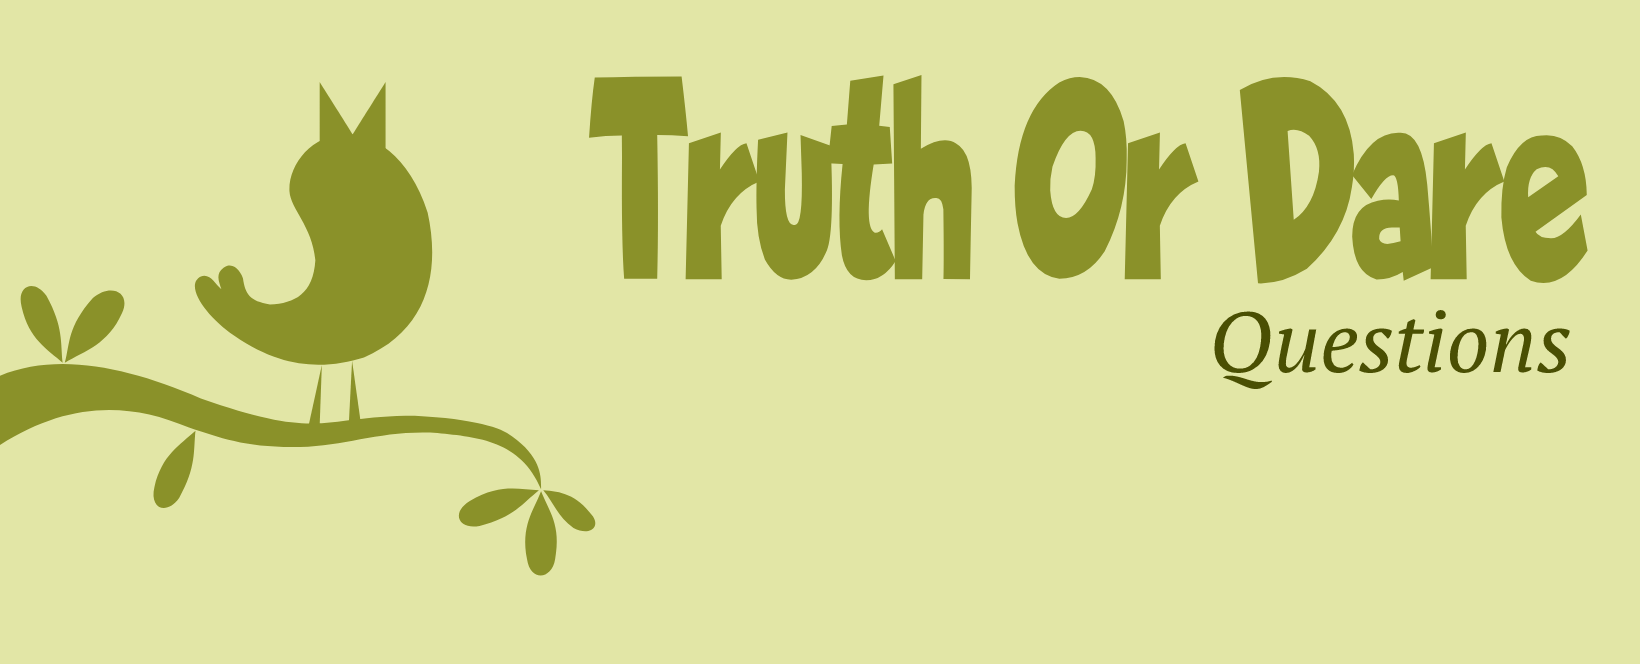 truth-or-dare